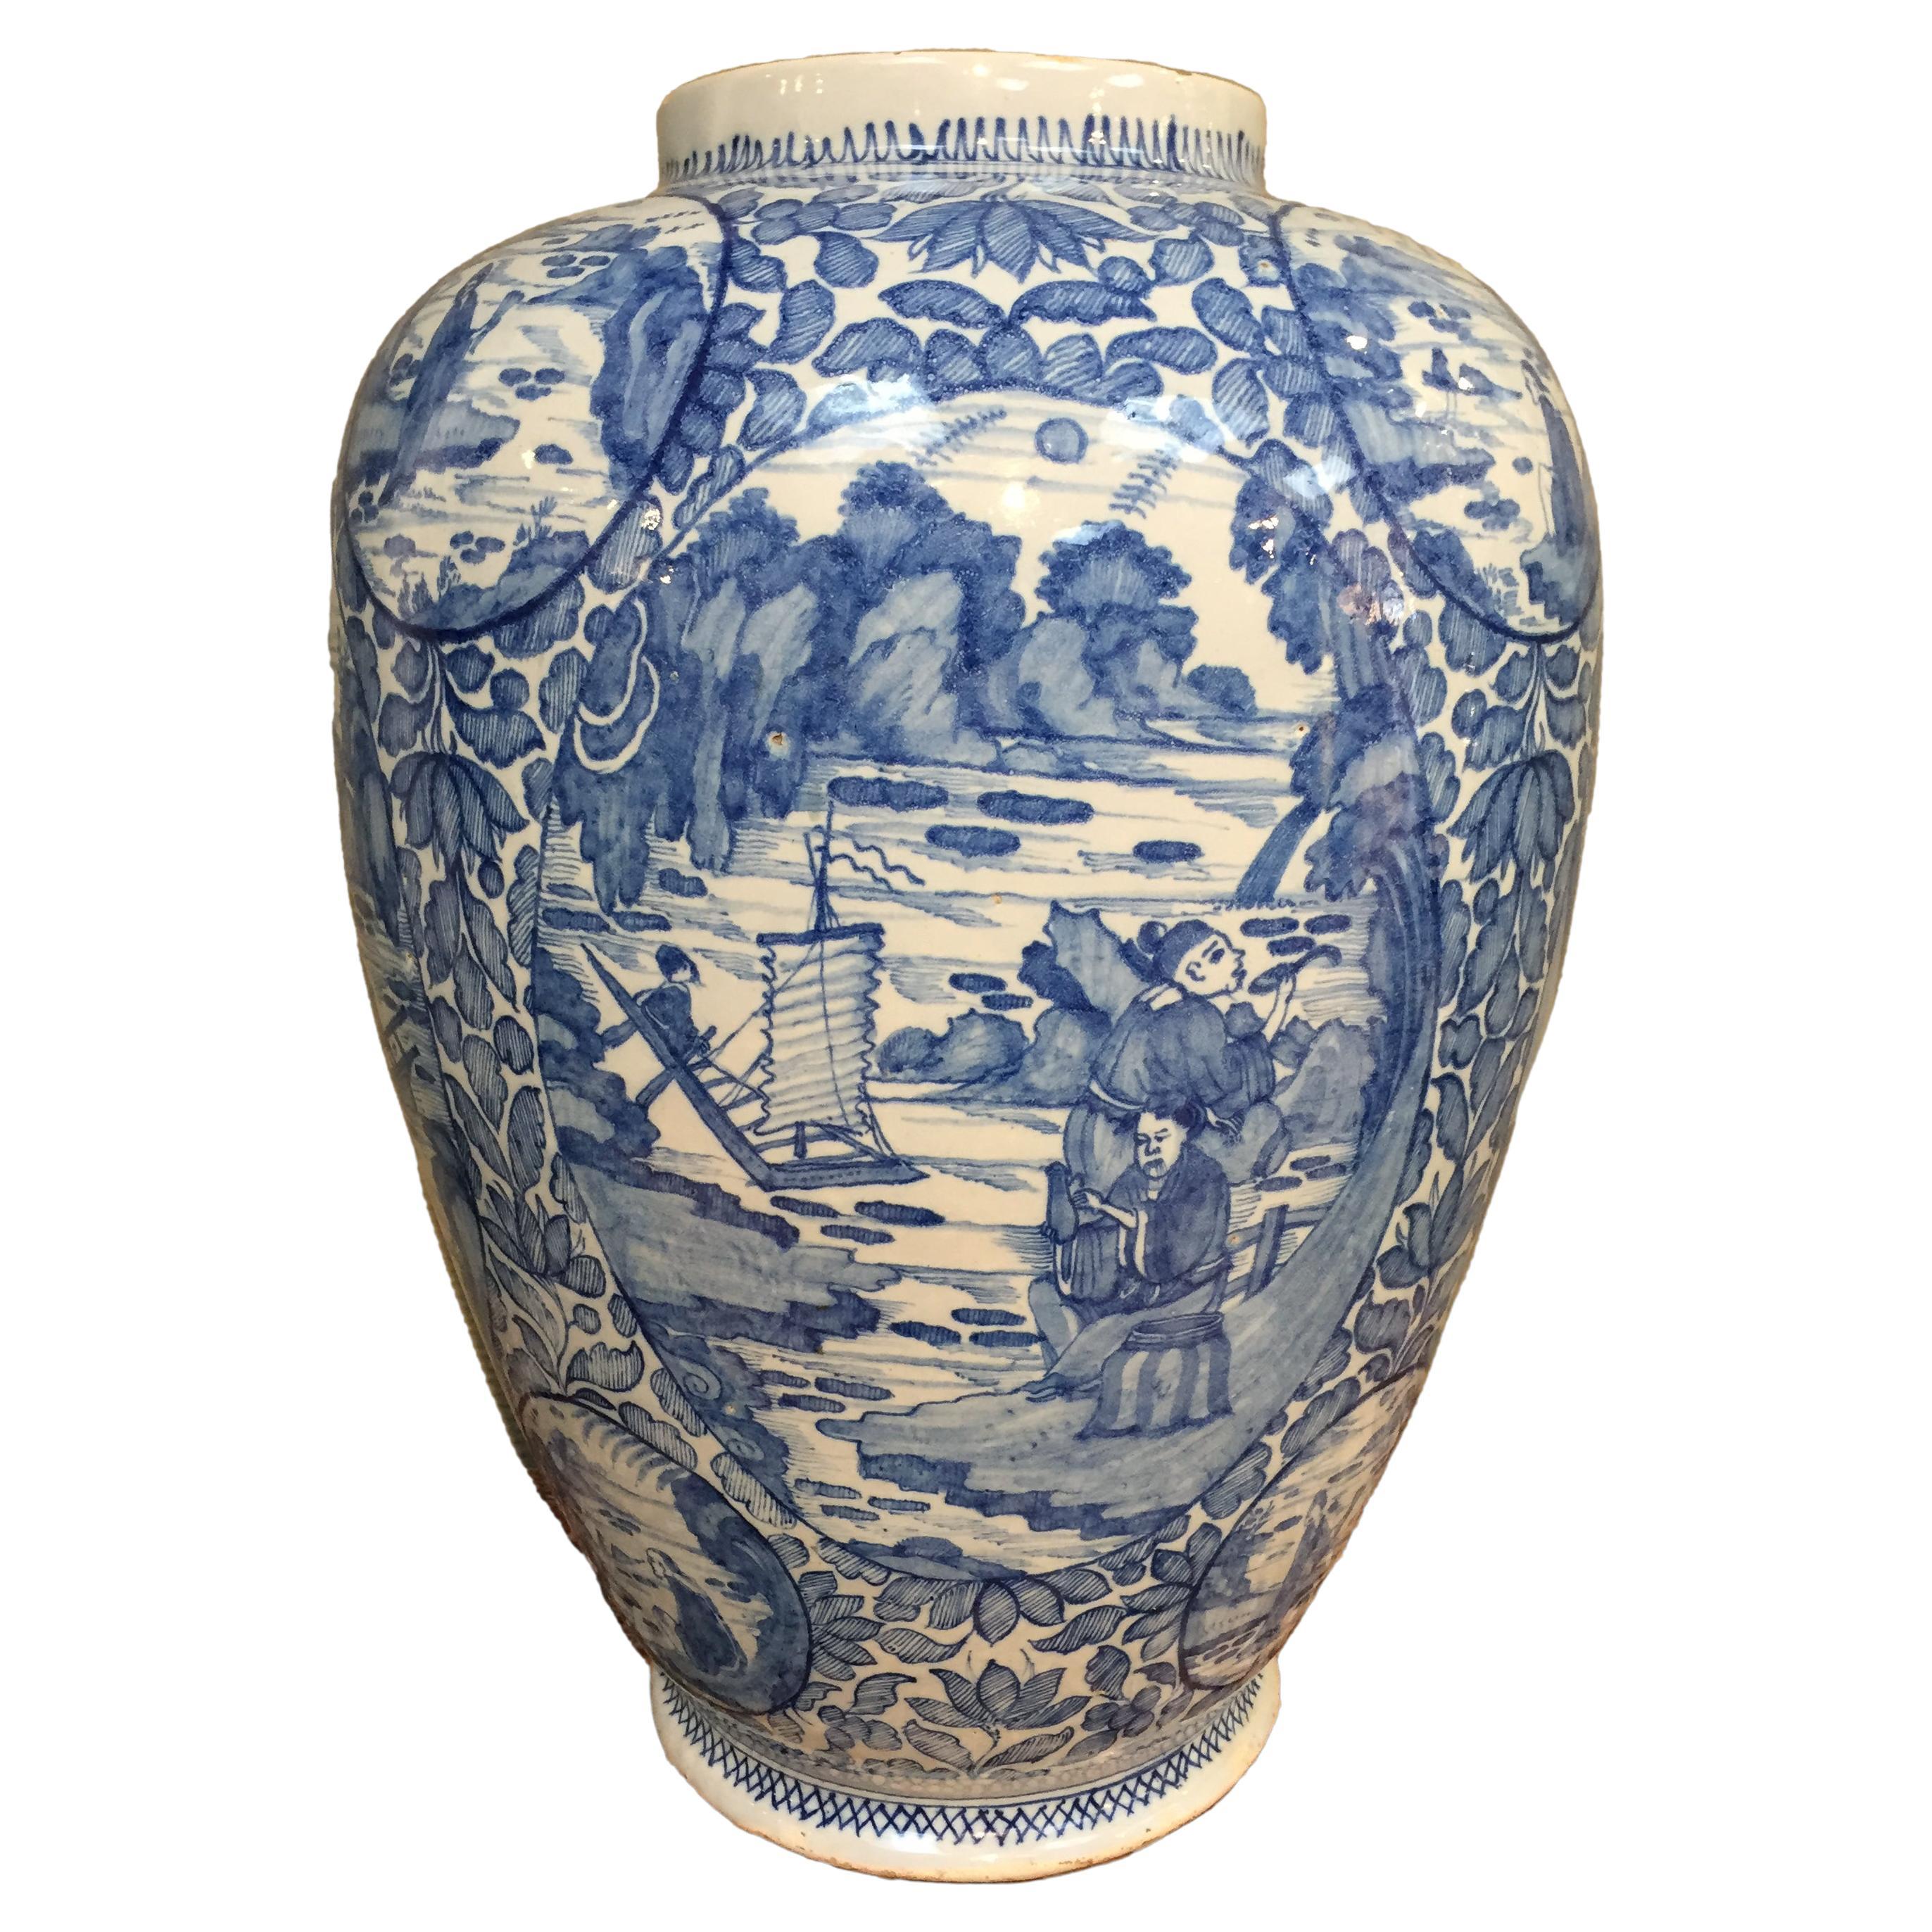 Très grand vase en faïence de Delft bleu et blanc en chinoiserie, début du 18ème siècle